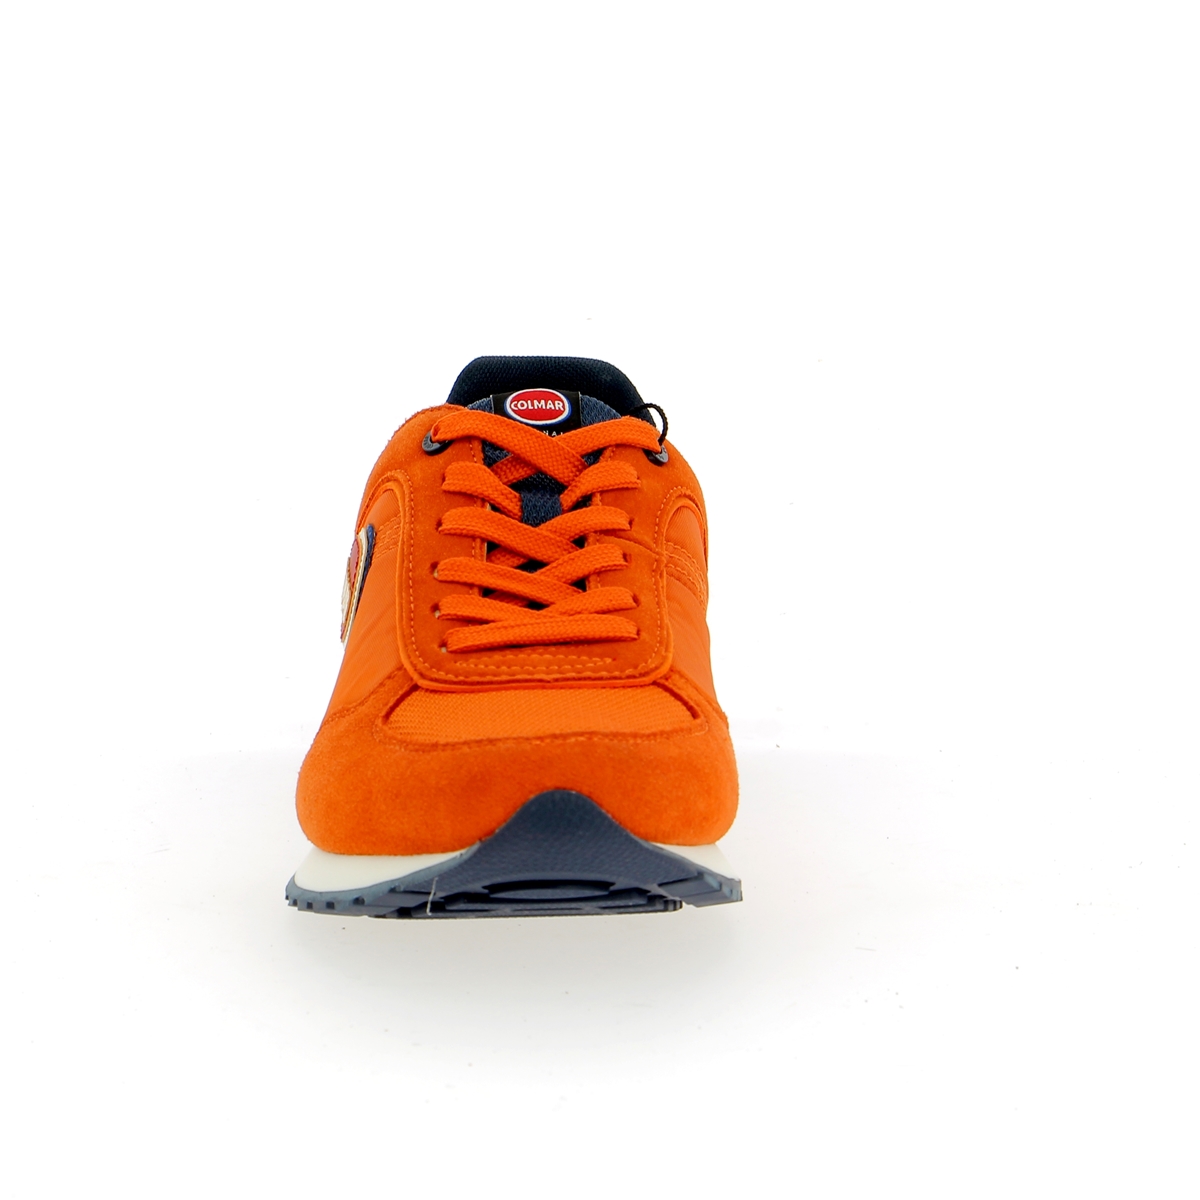 Colmar Sneakers oranje